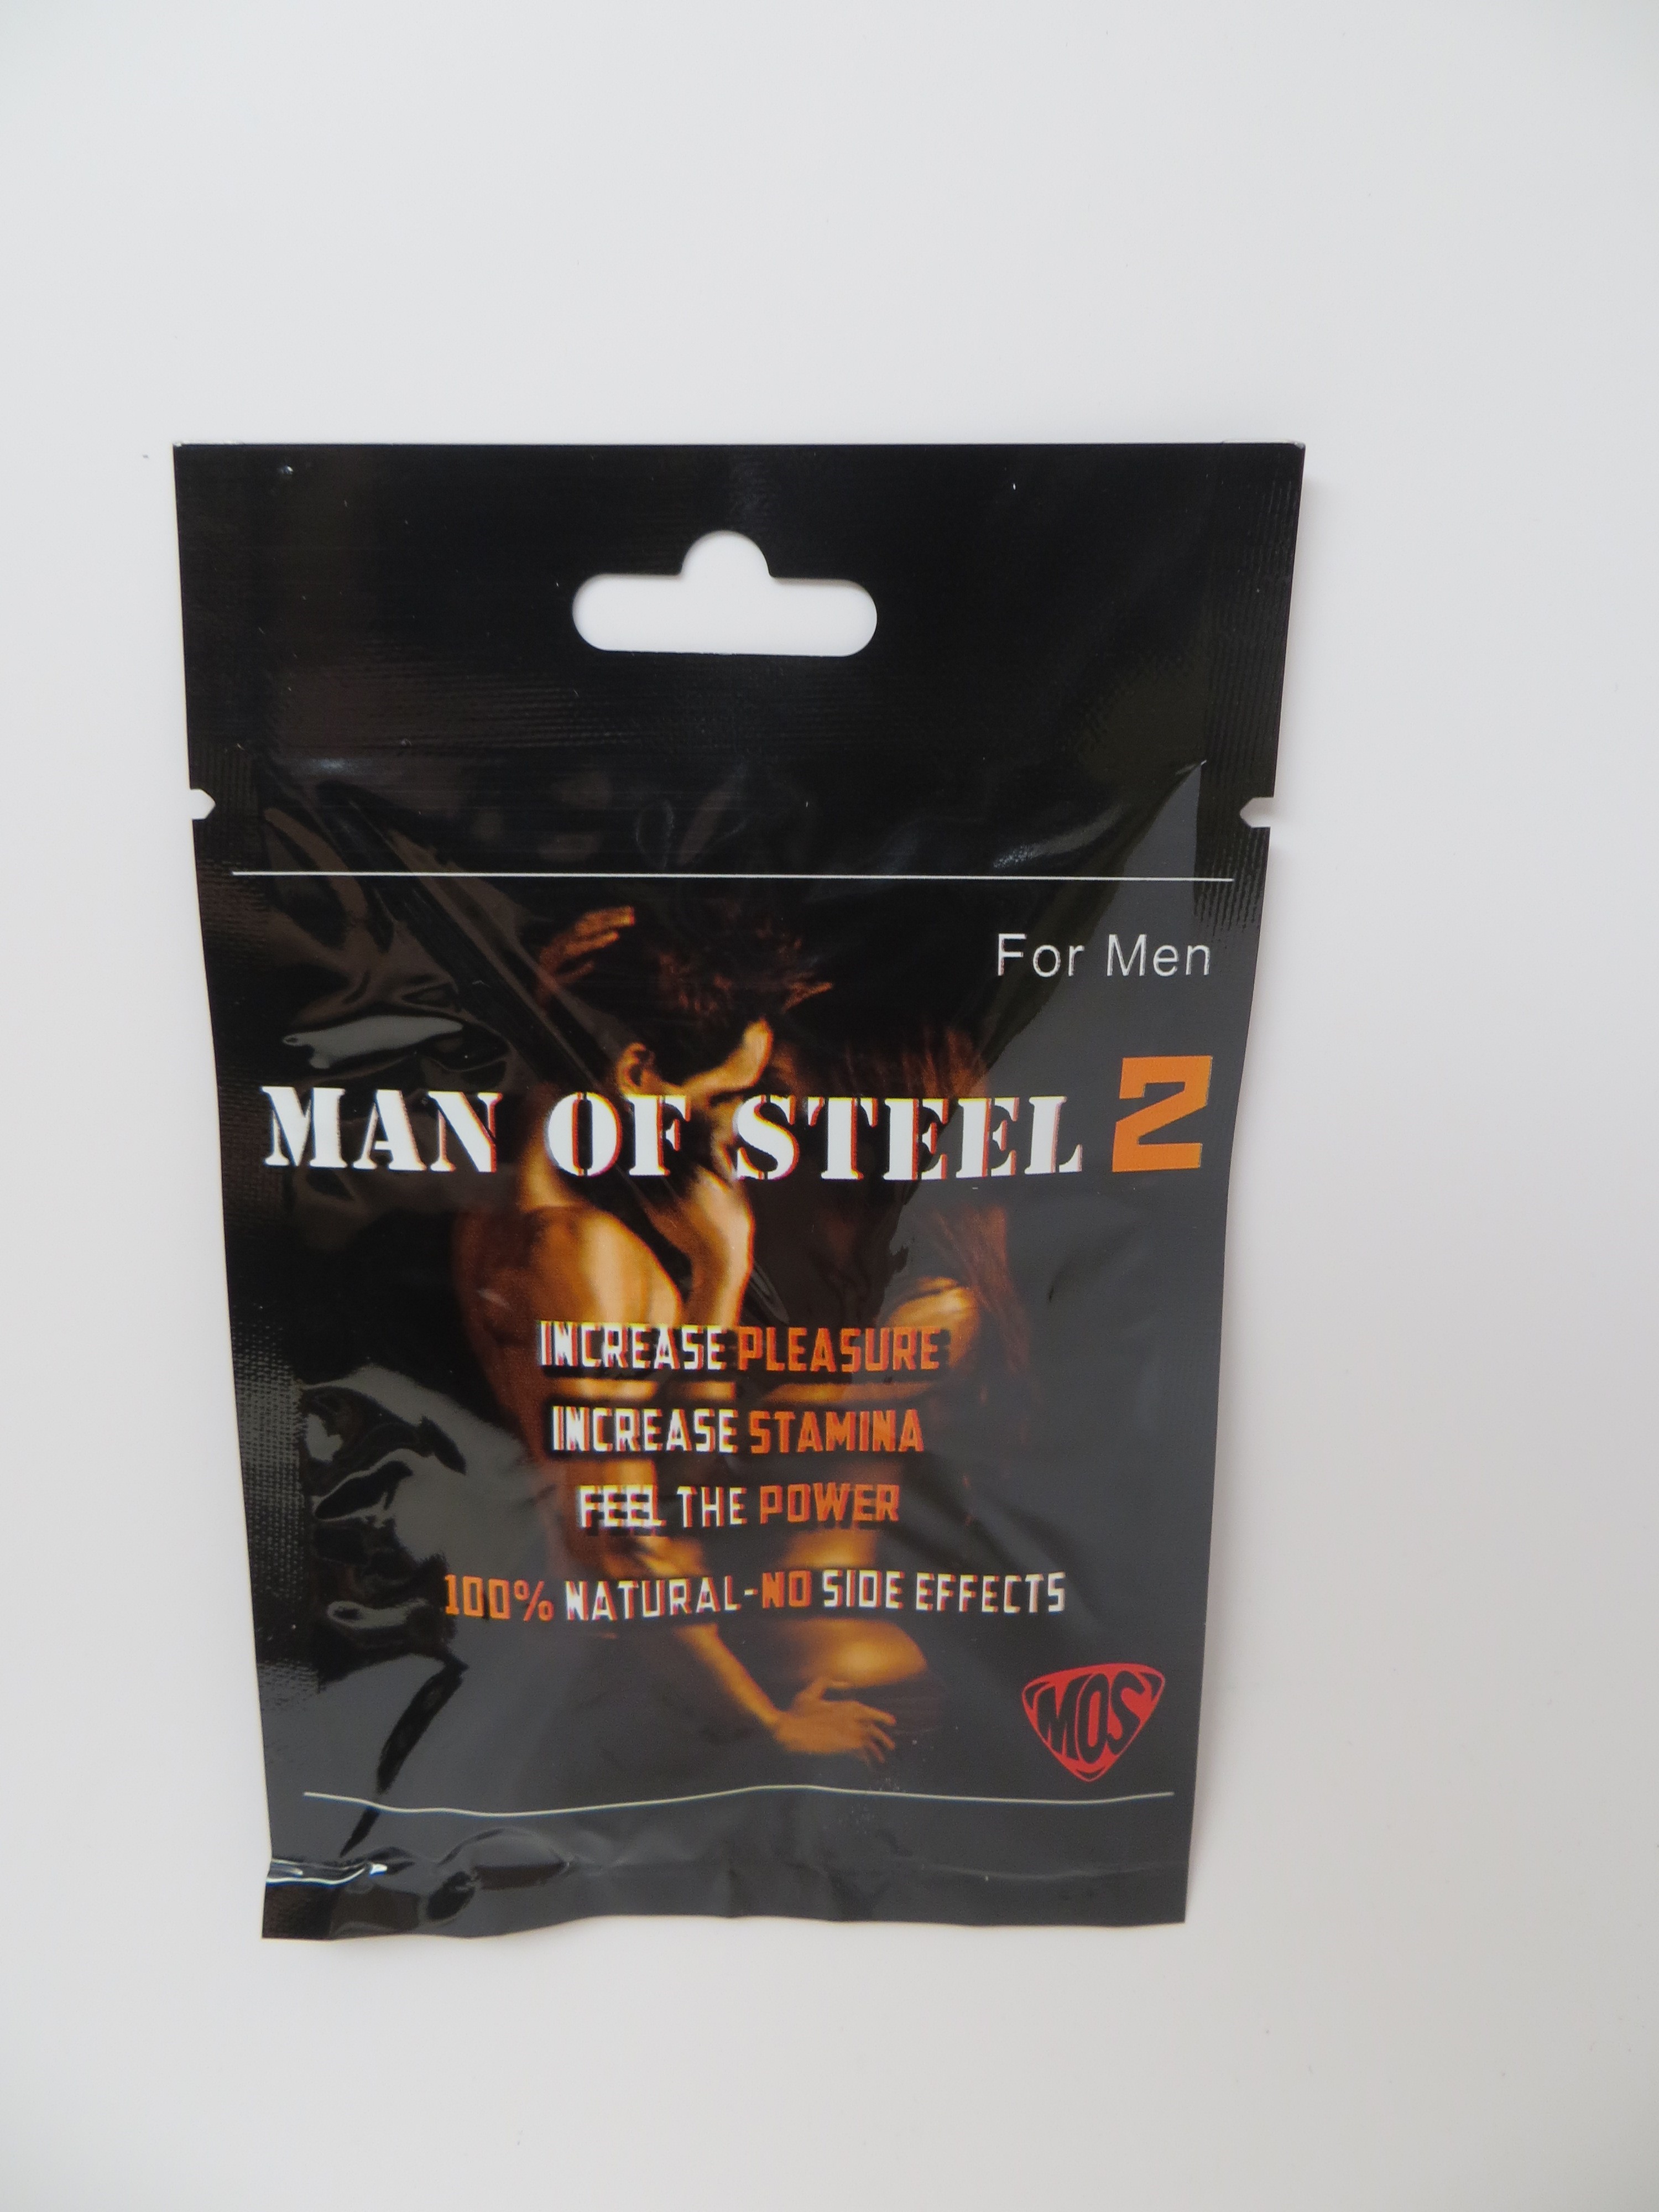 Billede af det ulovlige produkt: Man of Steel 2